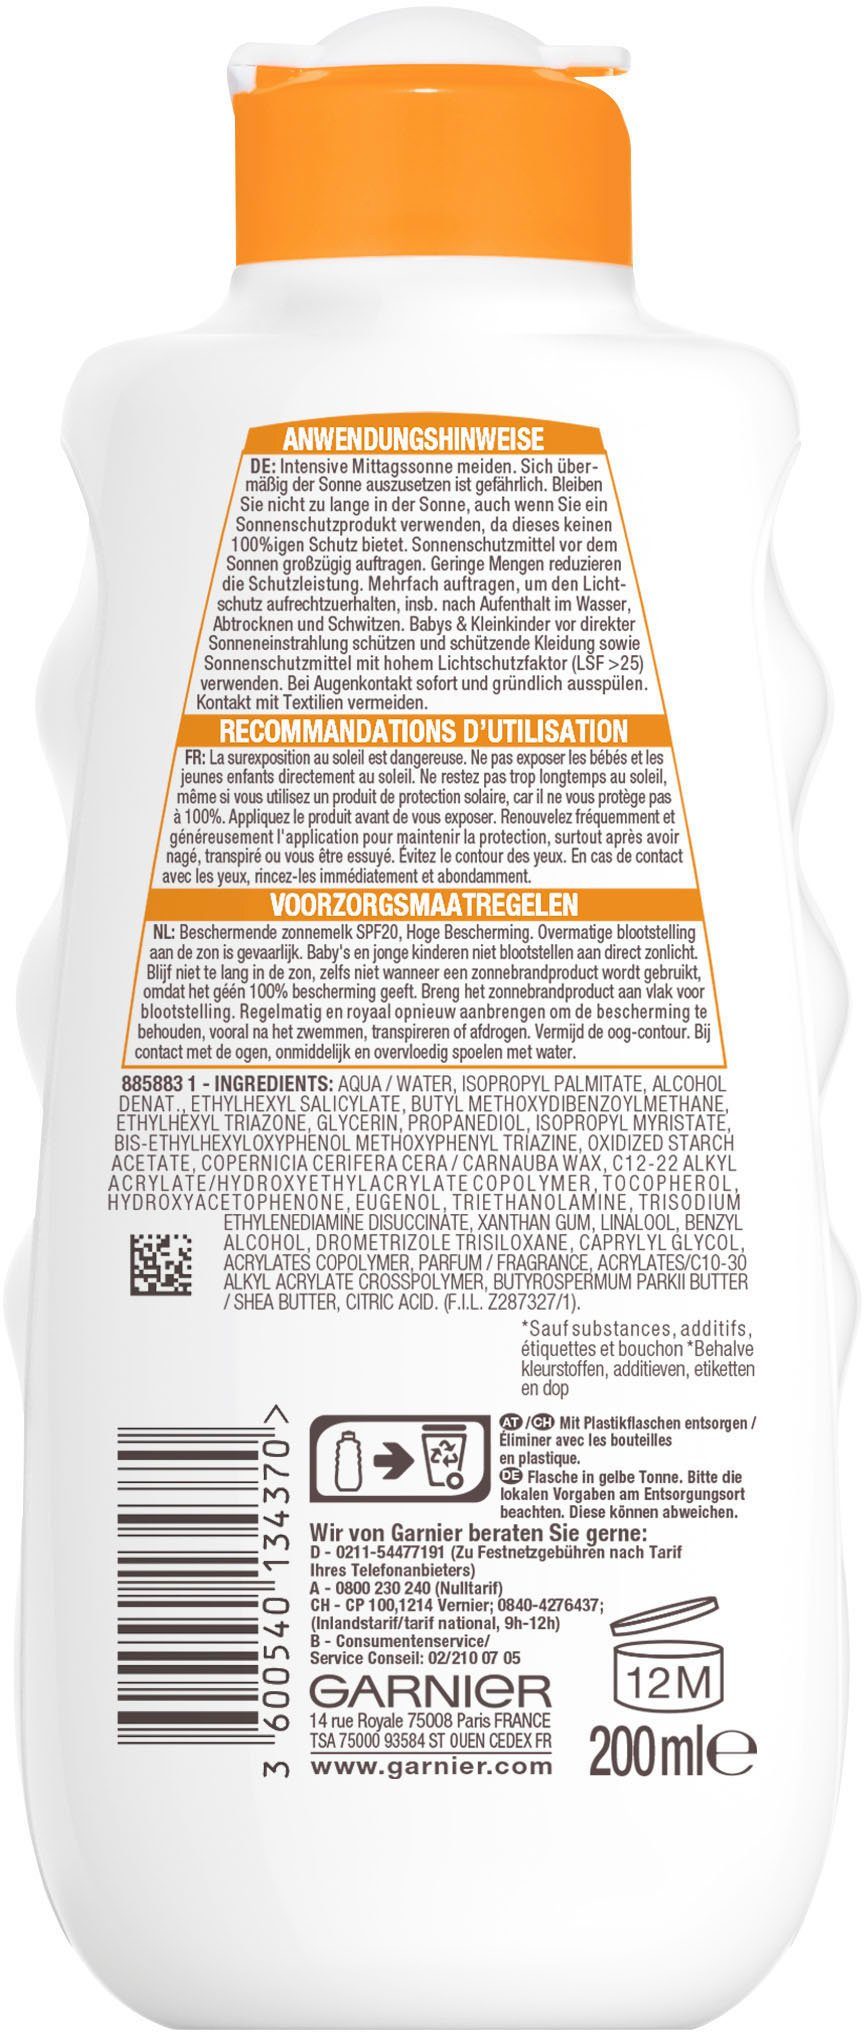 Sonnenschutz-Milch LSF GARNIER Garnier 24h Hydra 20 Sonnenschutzmilch